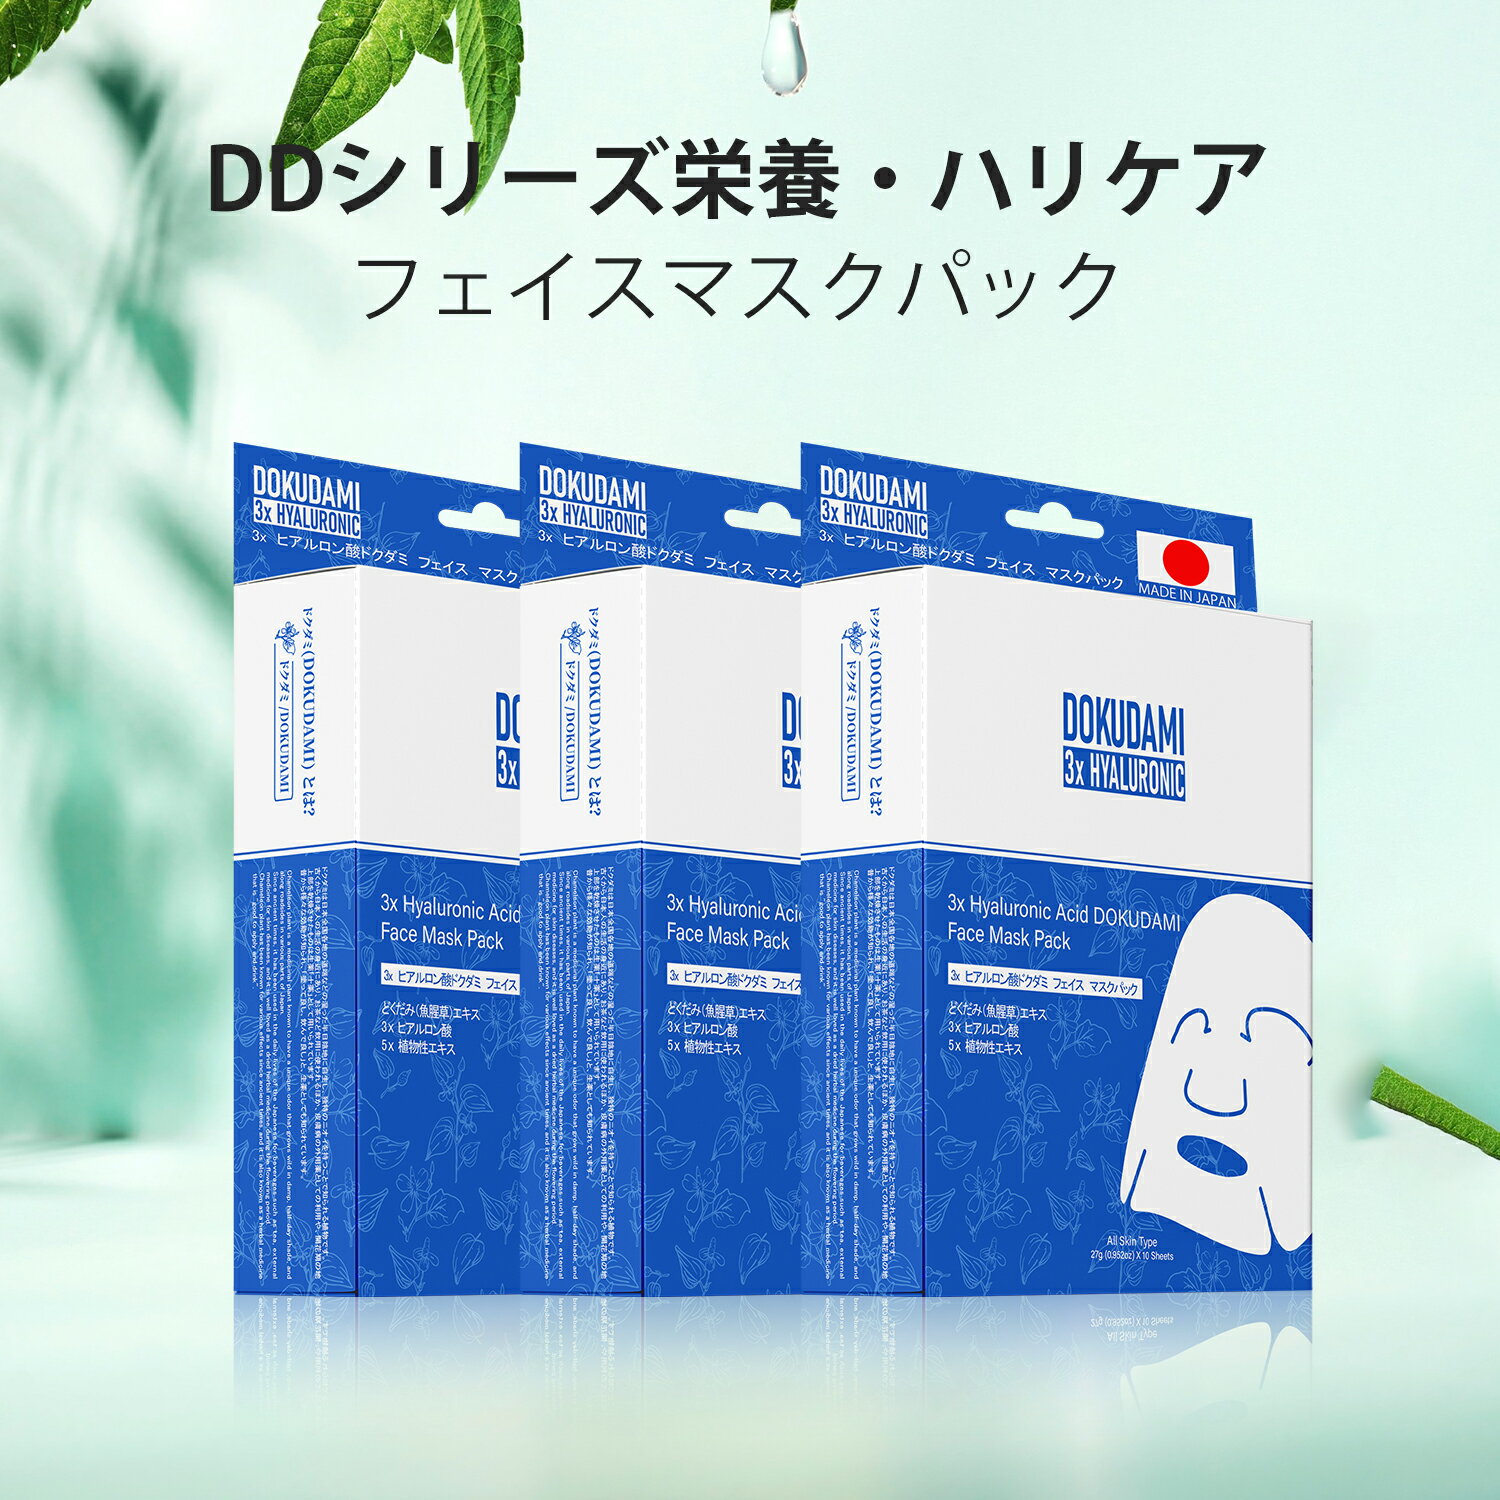 日本製Dokudamiドクダミ肌荒れスキンケアマスク - 天然由来成分で肌を優しくケア